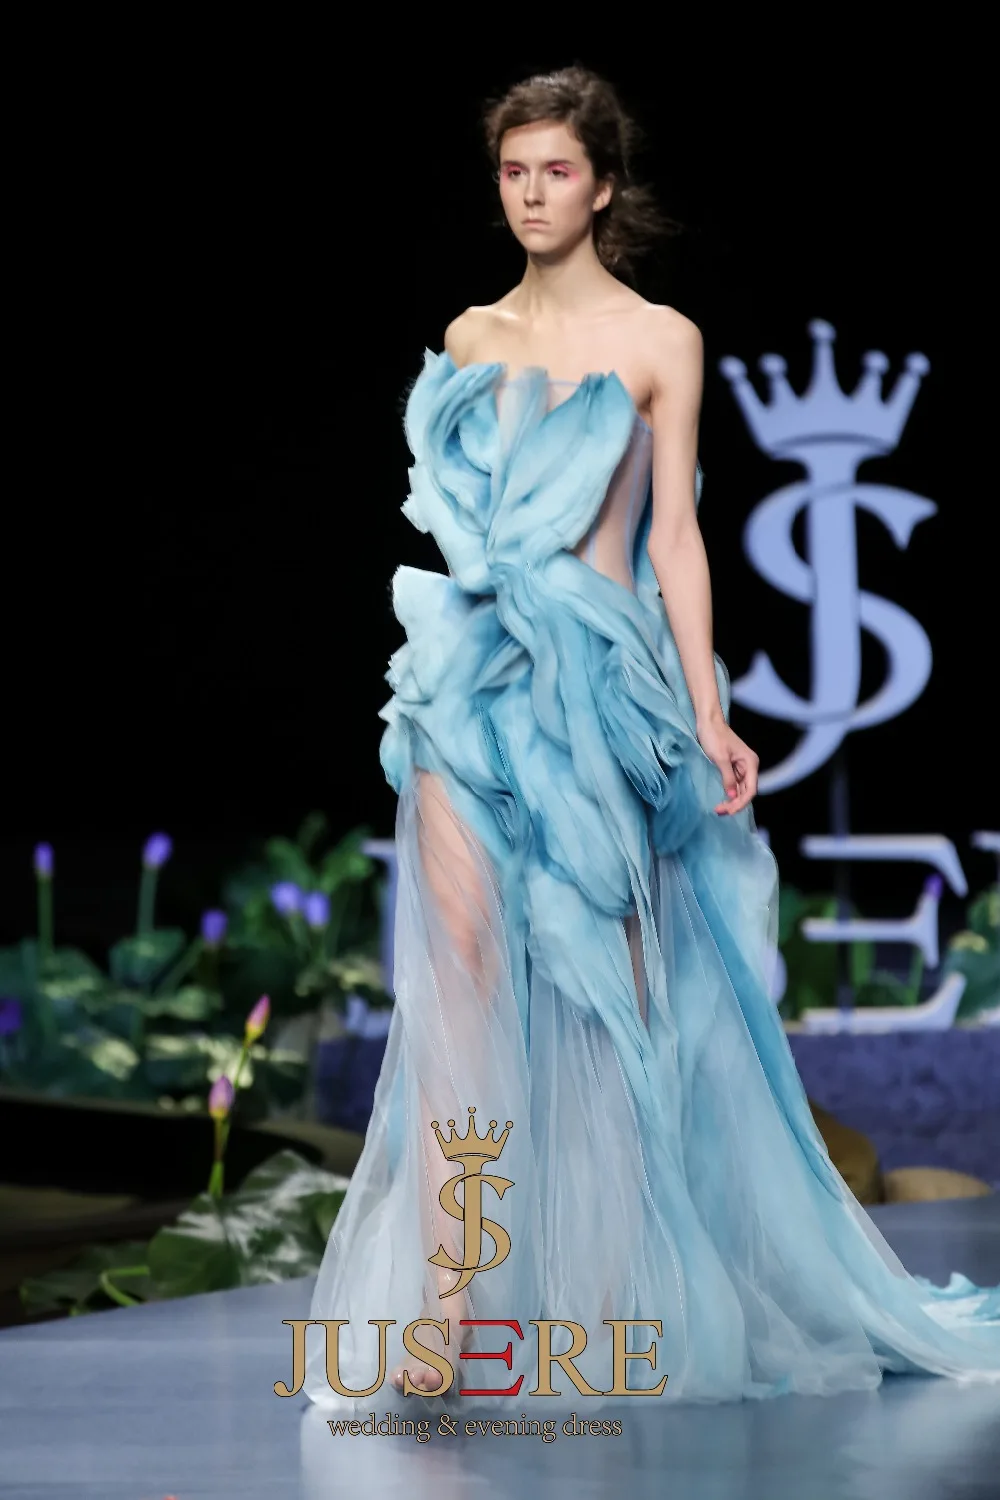 JUSERE SS модное синее длинное платье для выпускного вечера без бретелек прозрачное вечернее платье в пол длинное платье